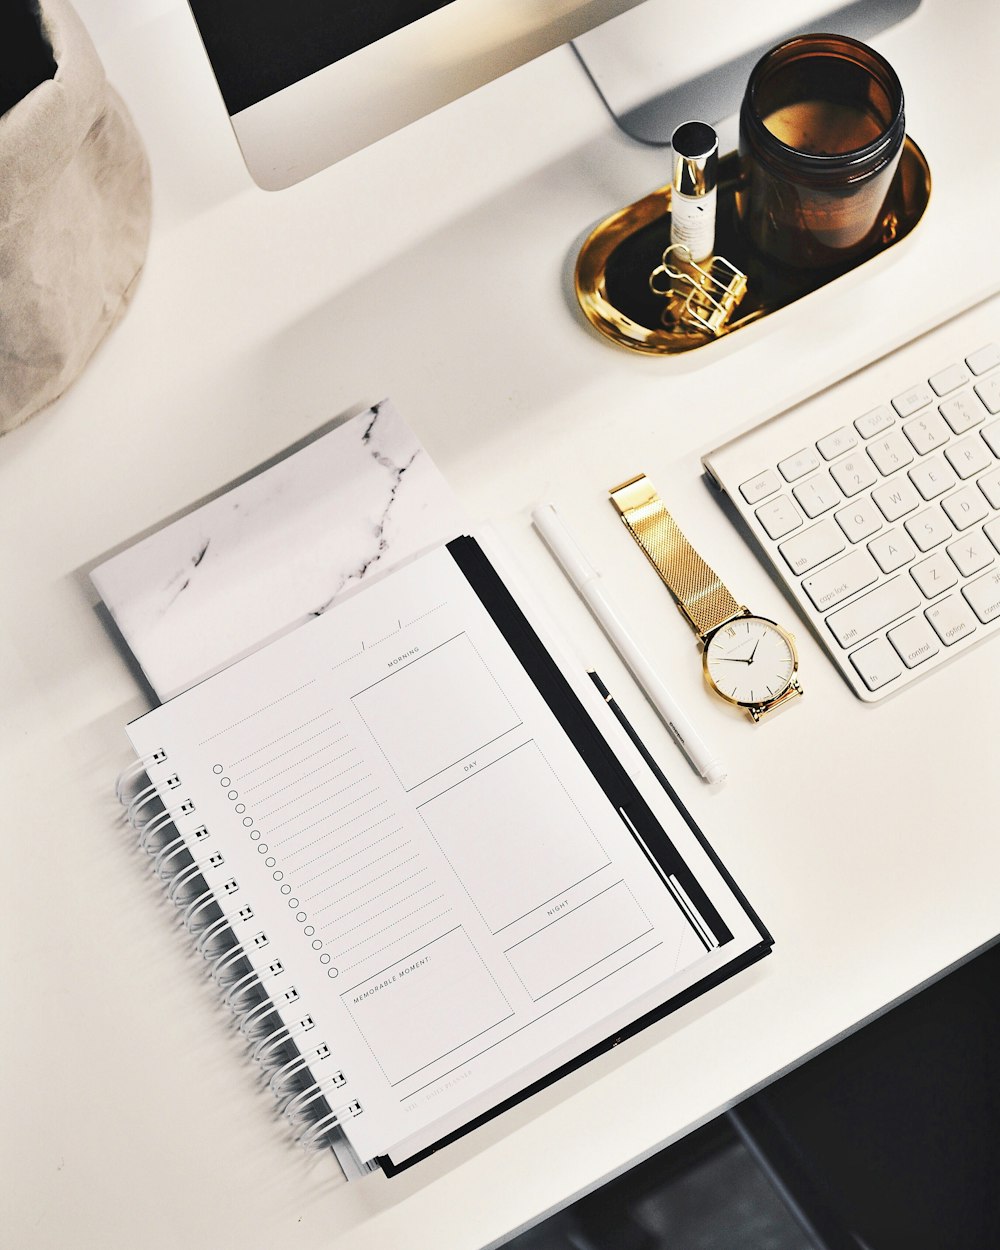 Une image plate d’un bureau avec un clavier, une montre en or, un cahier et plus encore.